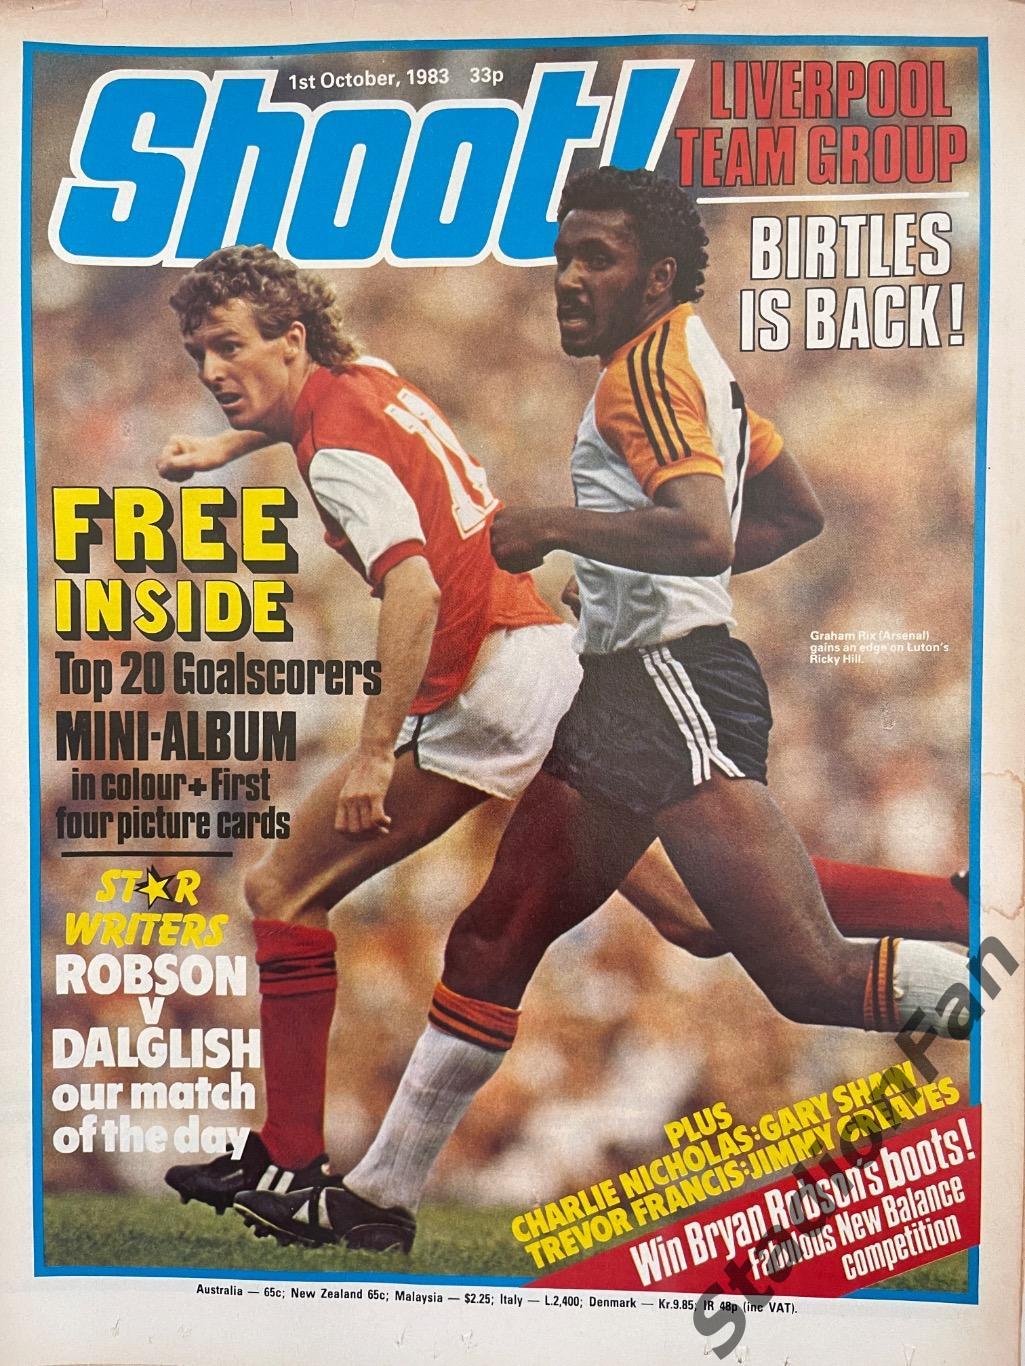 Журнал SHOOT! - 1983 год, 1 октября.